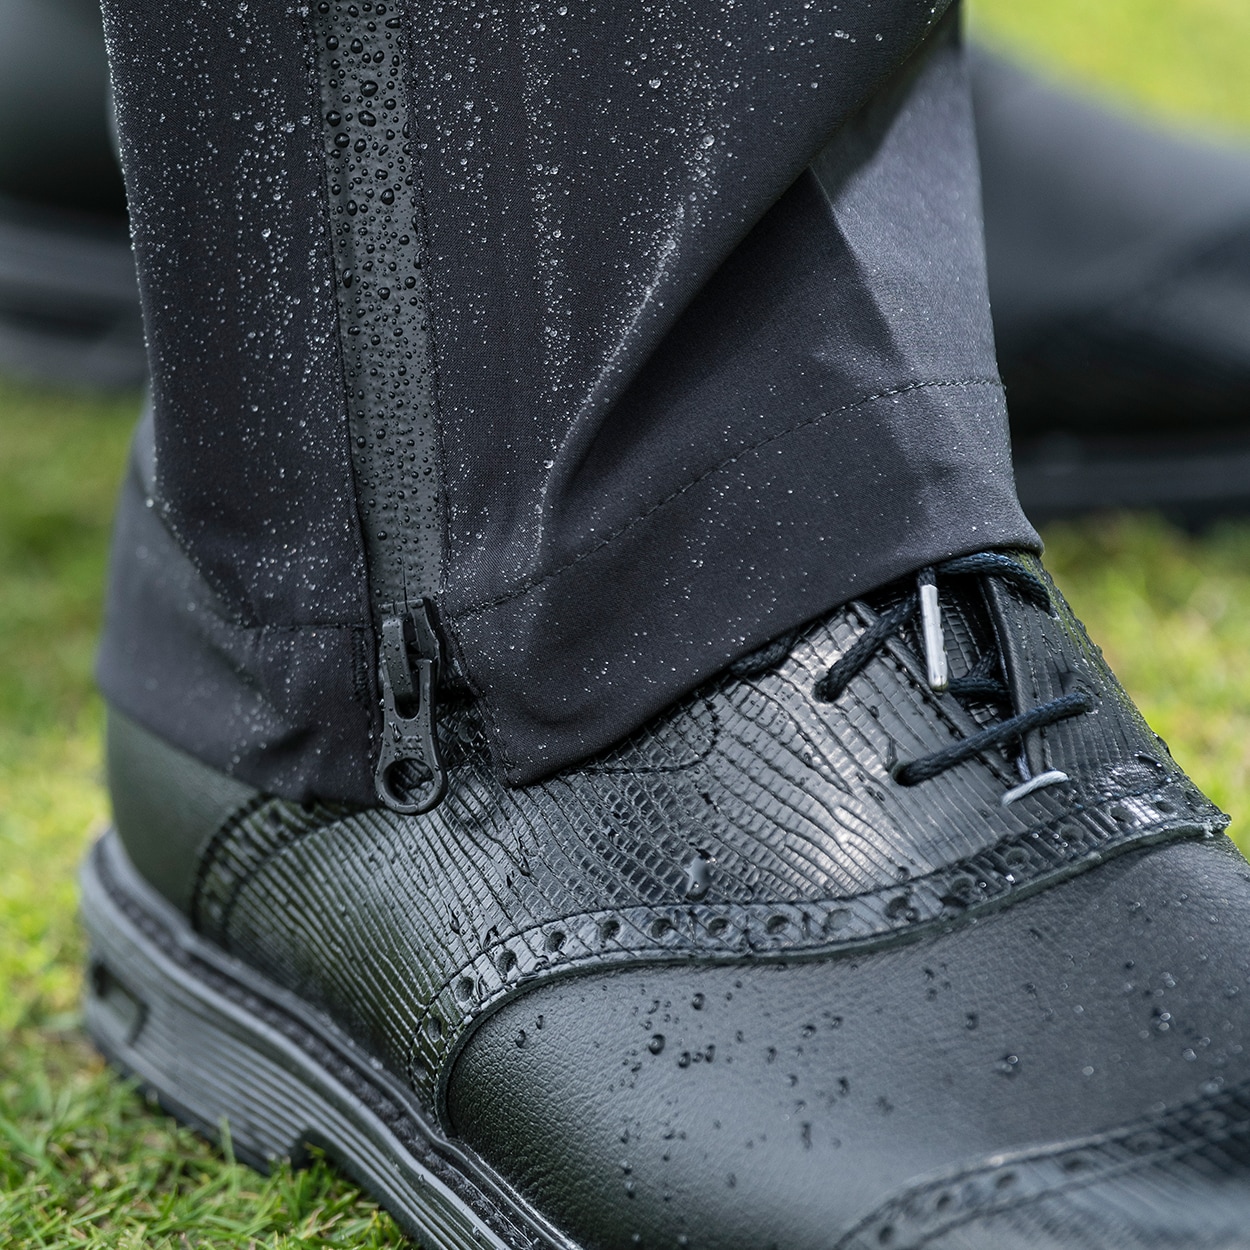 FootJoy hommes, Chaussures et vêtements de golf